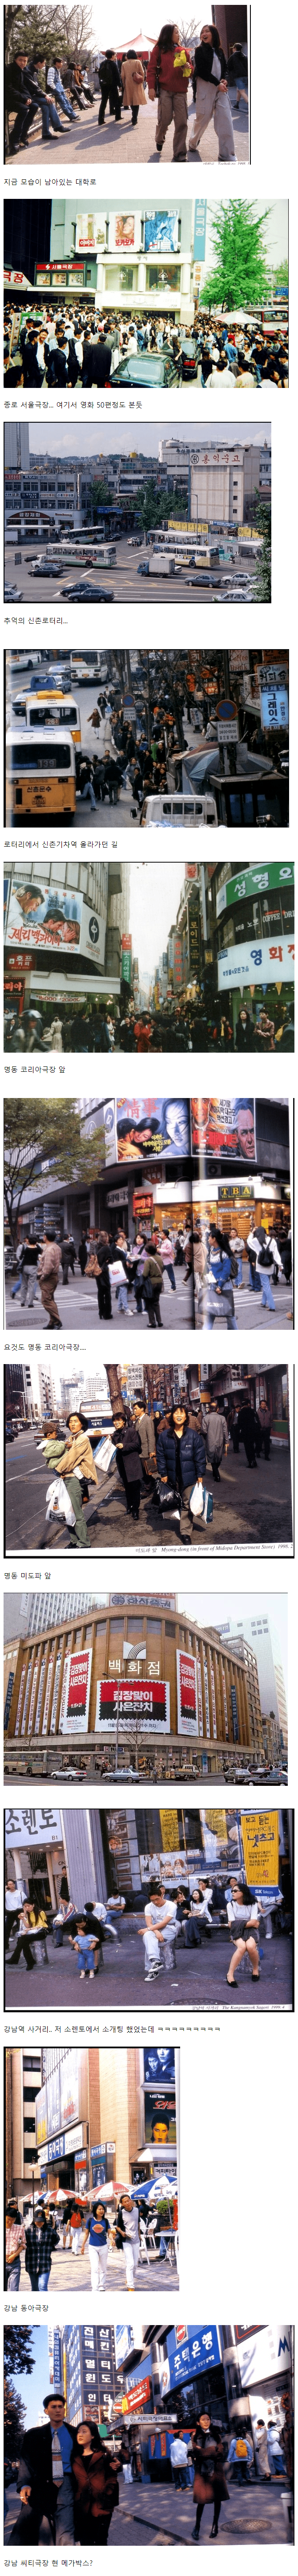 1.png 90년대 후반 서울시내 풍경.jpg